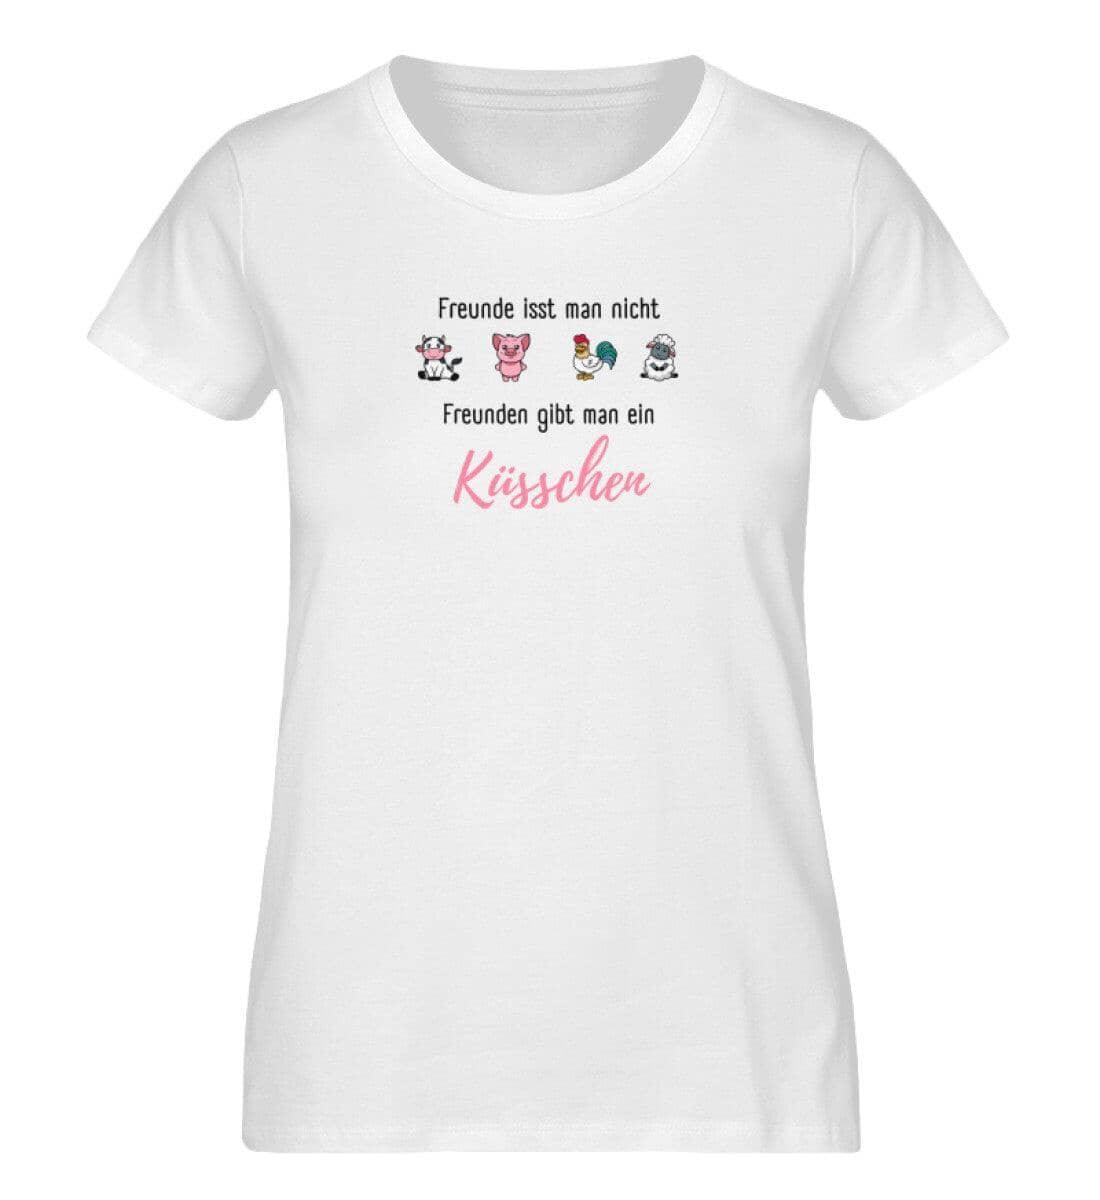 Freunden gibt man ein Küsschen  - Damen Organic Shirt - S